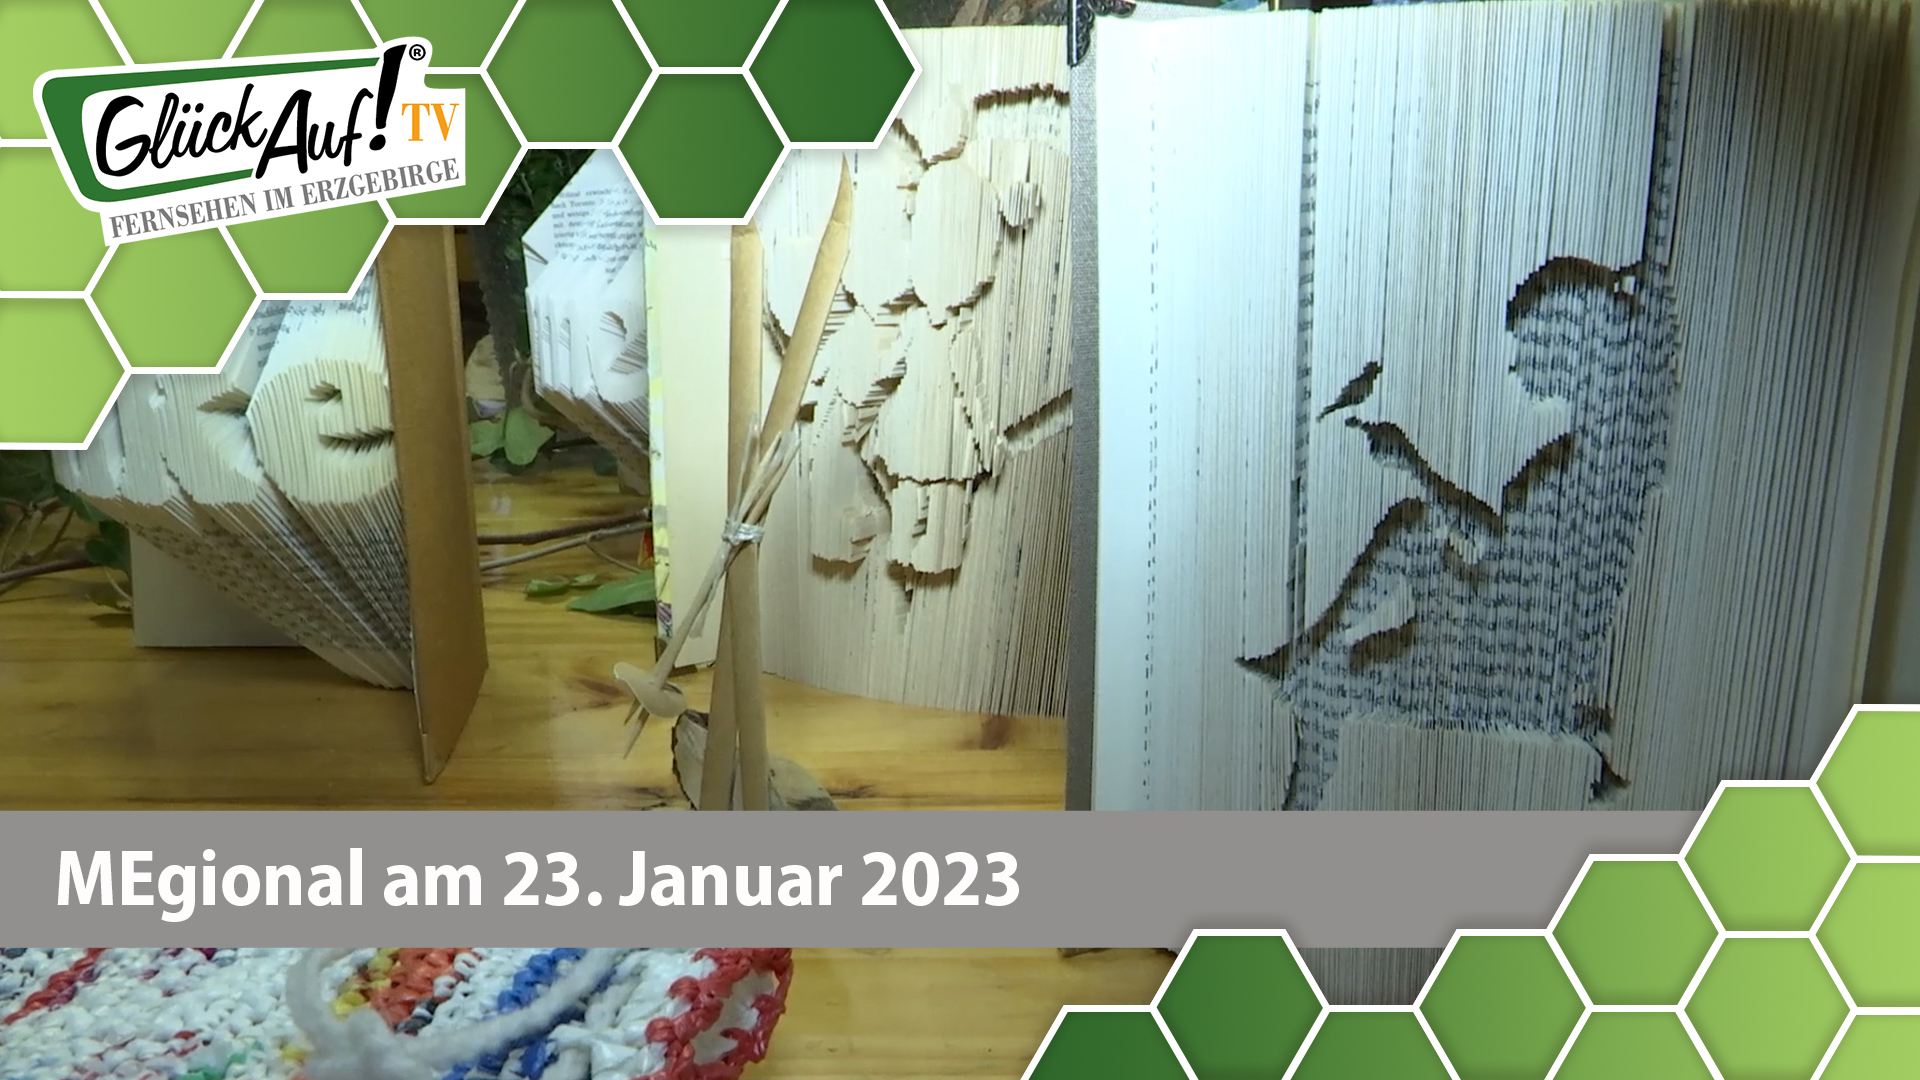 MEgional am 23. Januar 2023 - mit einer neuen Ausstellung in der Naturschutzstation Pobershau